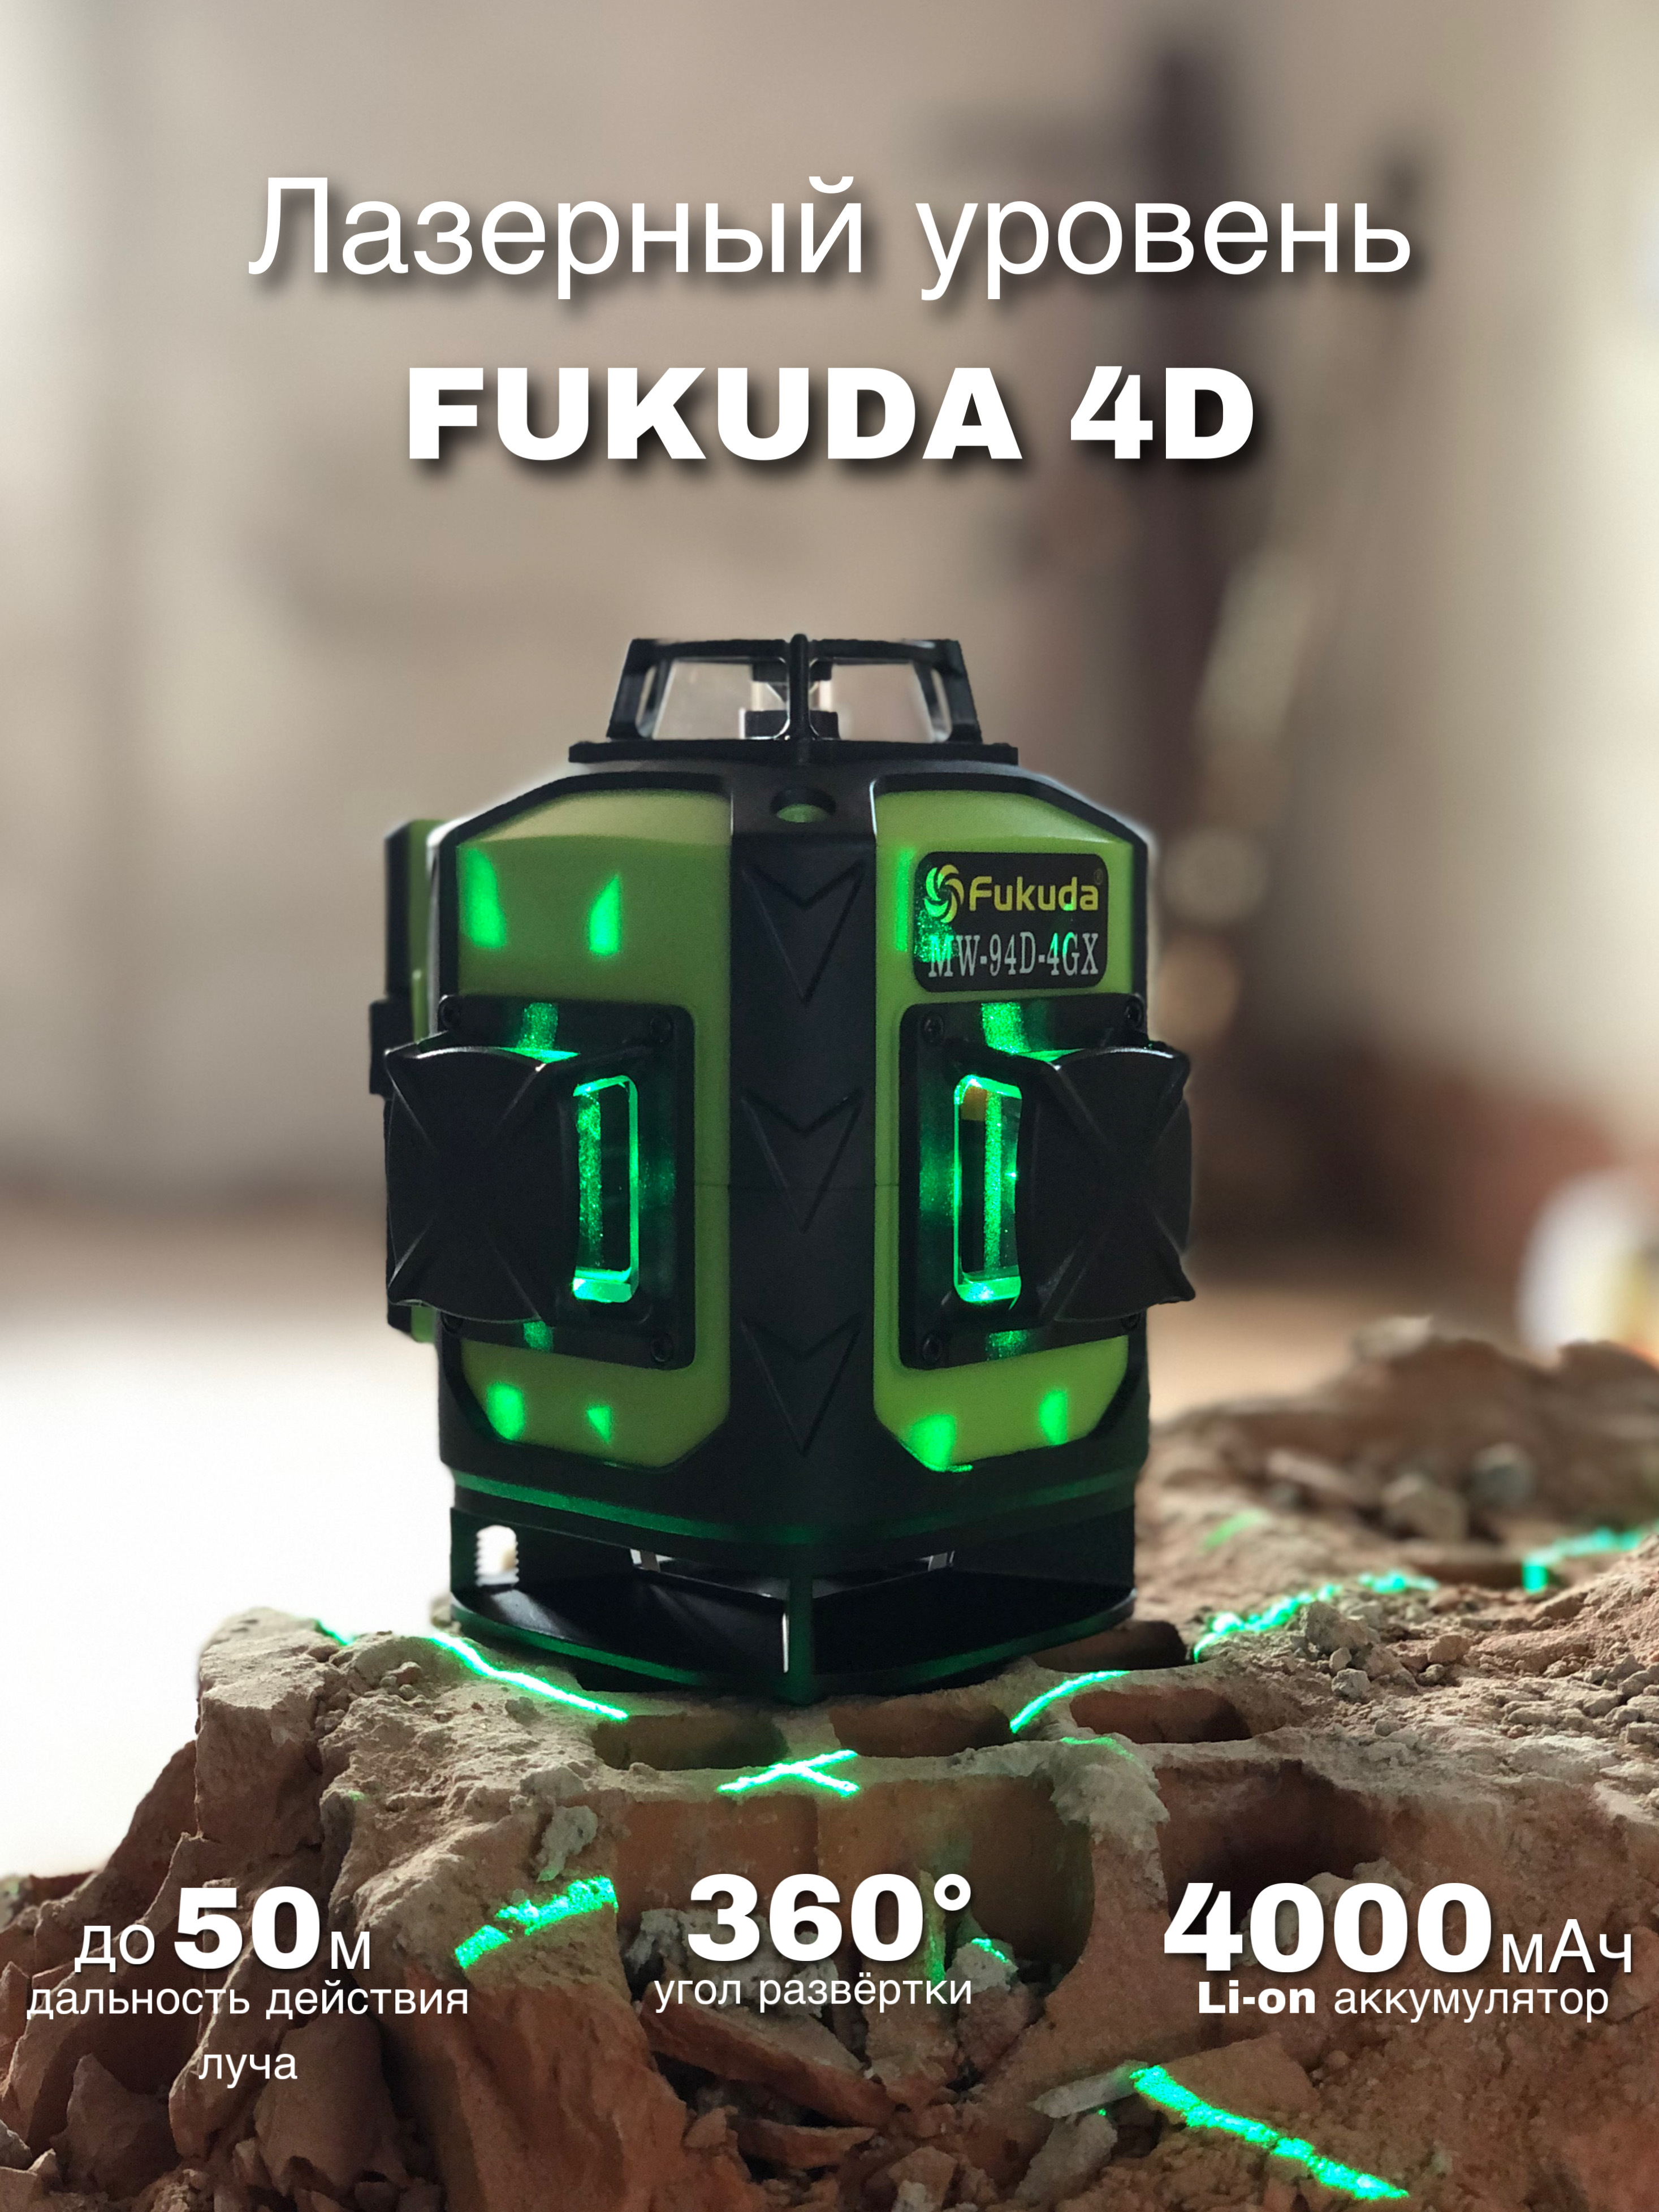 Fukuda 4d mw 94d 4gx